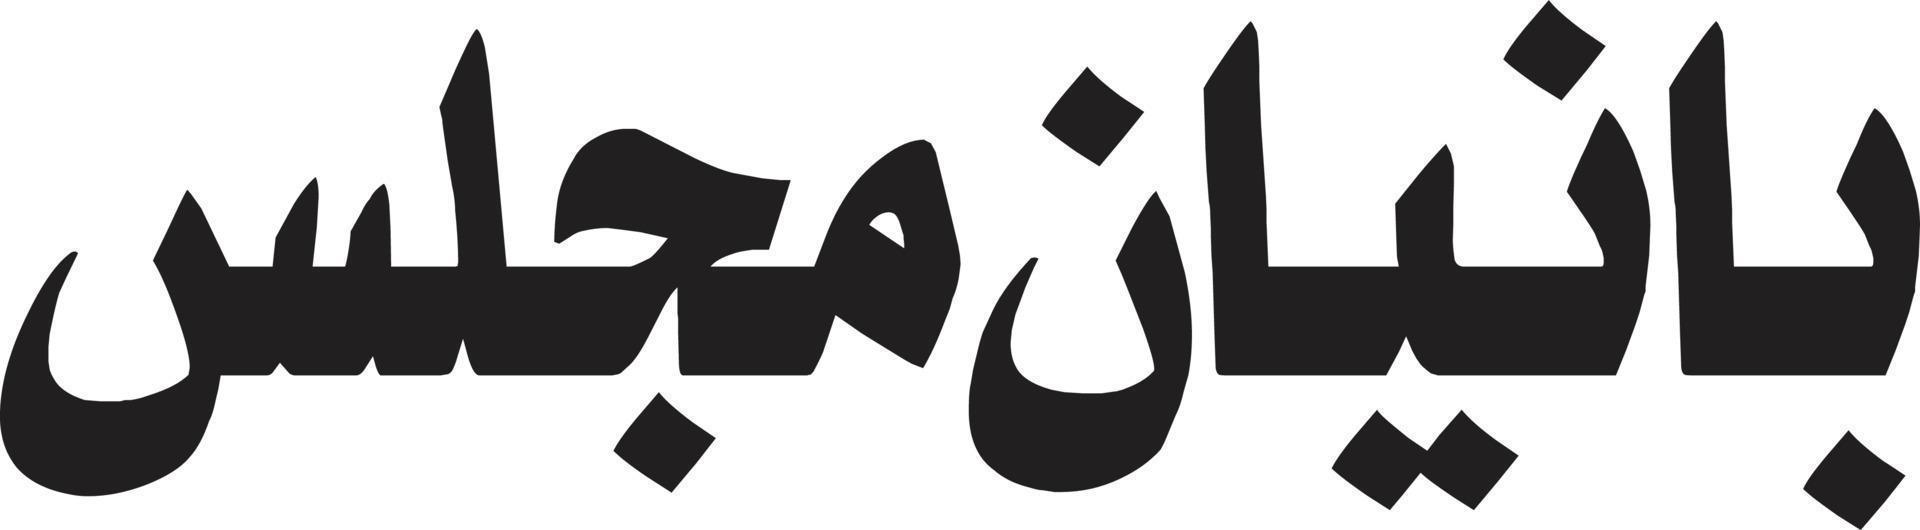 banean majlass calligraphie islamique ourdou vecteur gratuit